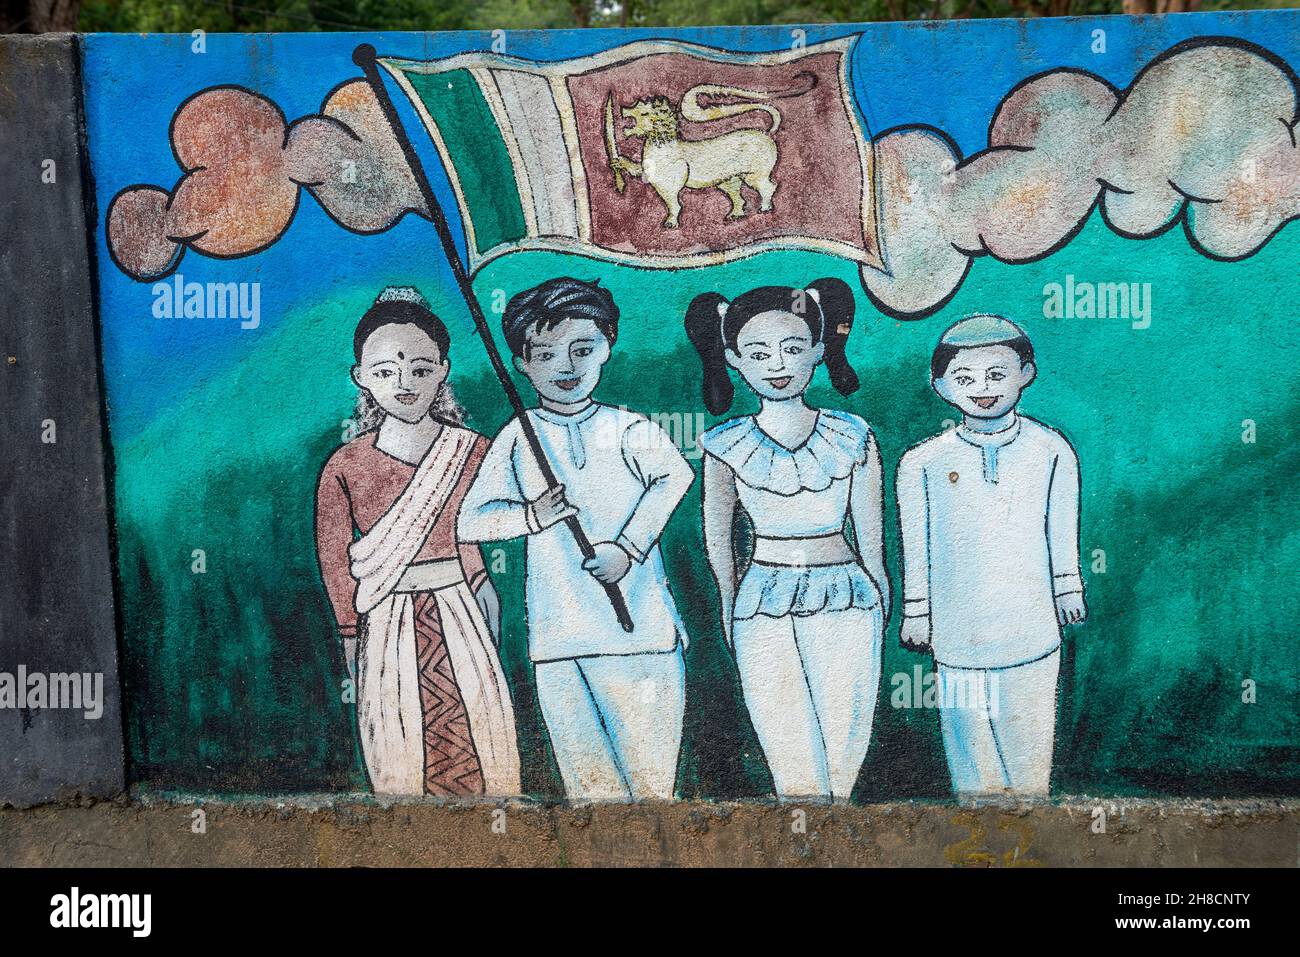 Sri Lanka, province d'Uva, école, Schule, école,drapeau, drapeau, Fahne, Flagge, flah,Hindou tamoul, cinghalais, musulman Banque D'Images